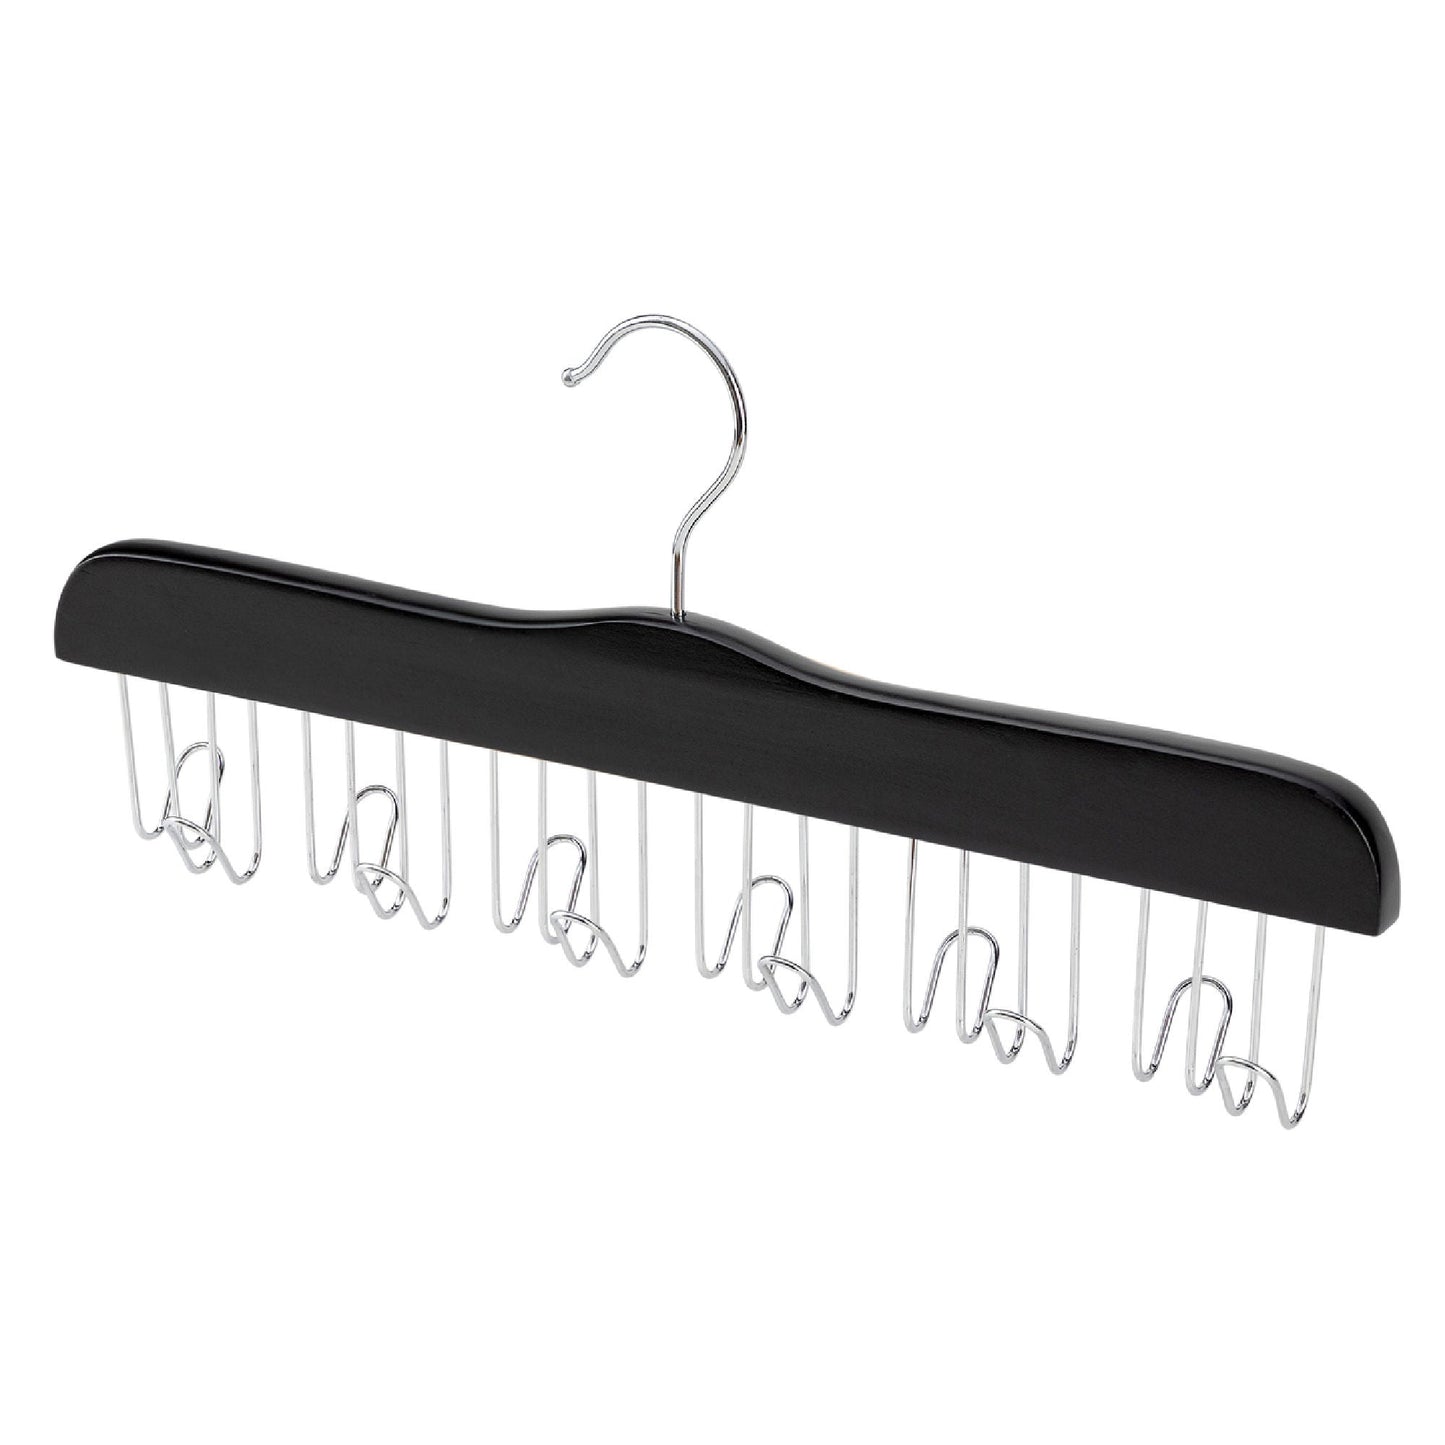 Black Wooden Tie Hanger - Sold 1/5/10 - Rackshop Australia